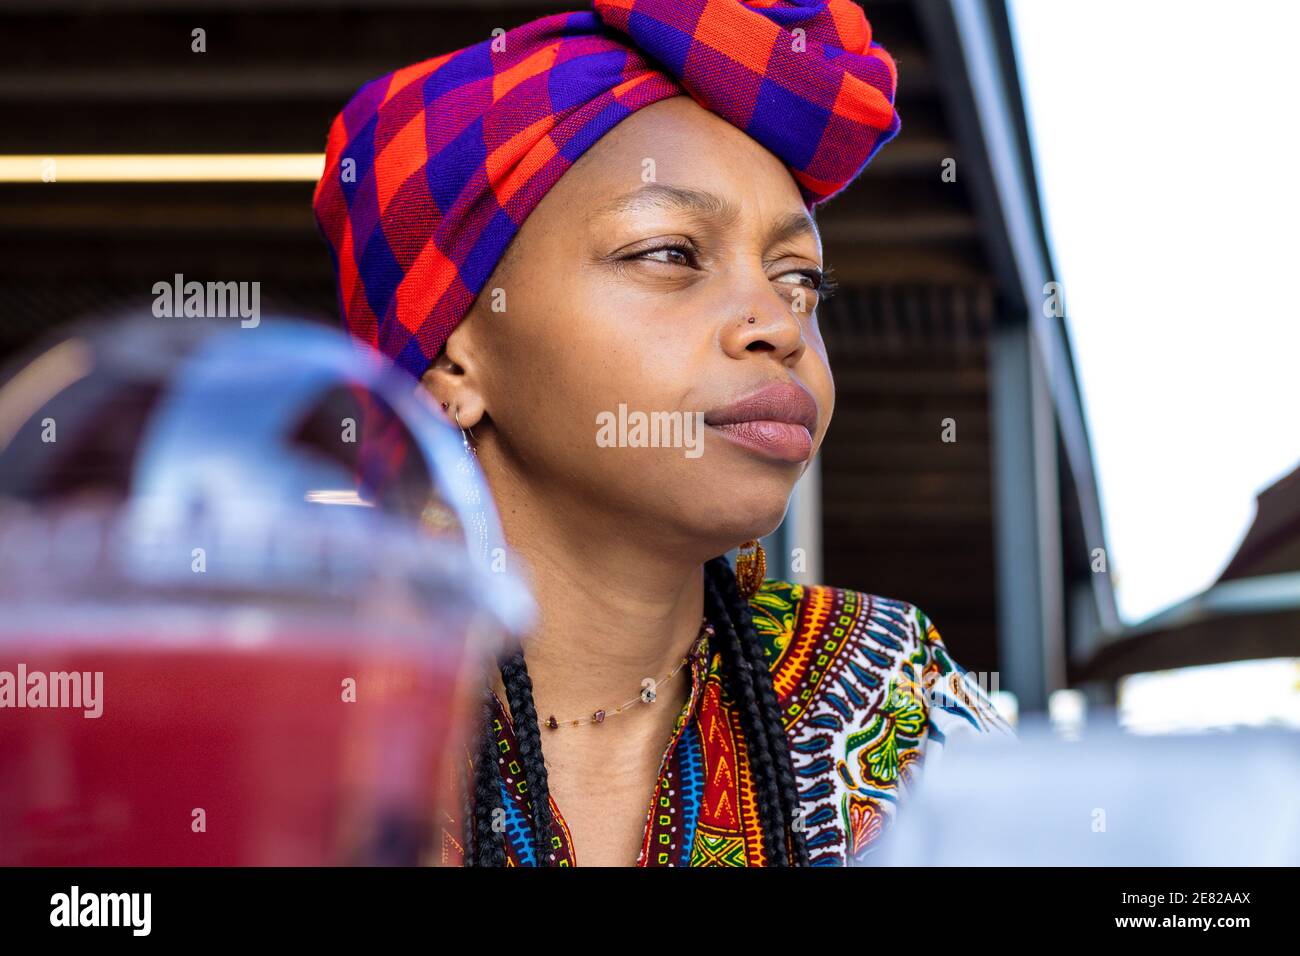 Primo piano ritratto di una donna africana penosa che sta fissando qualcosa all'aperto Foto Stock